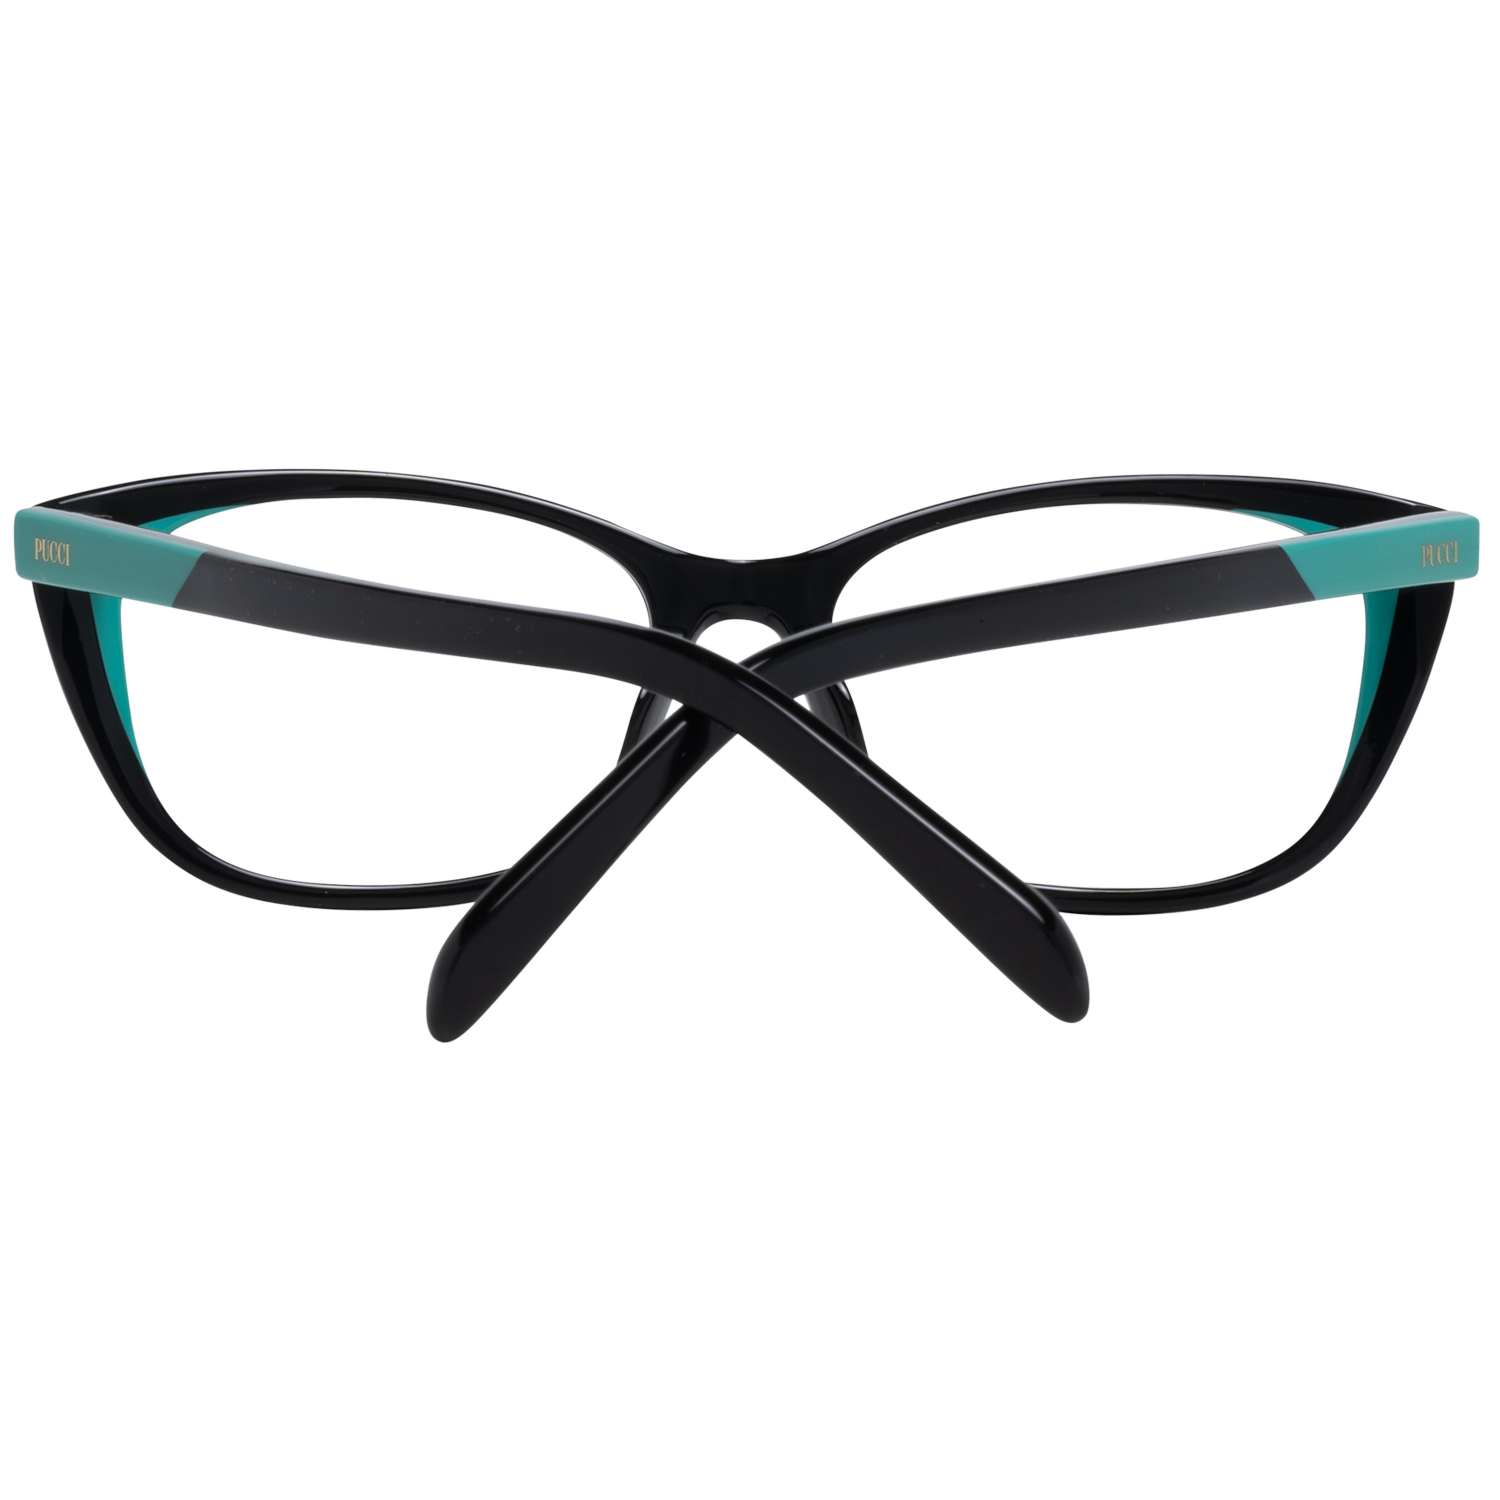 Emilio Pucci Frames Emilio Pucci Optical Frame EP5127 001 52 Eyeglasses Eyewear UK USA Australia 